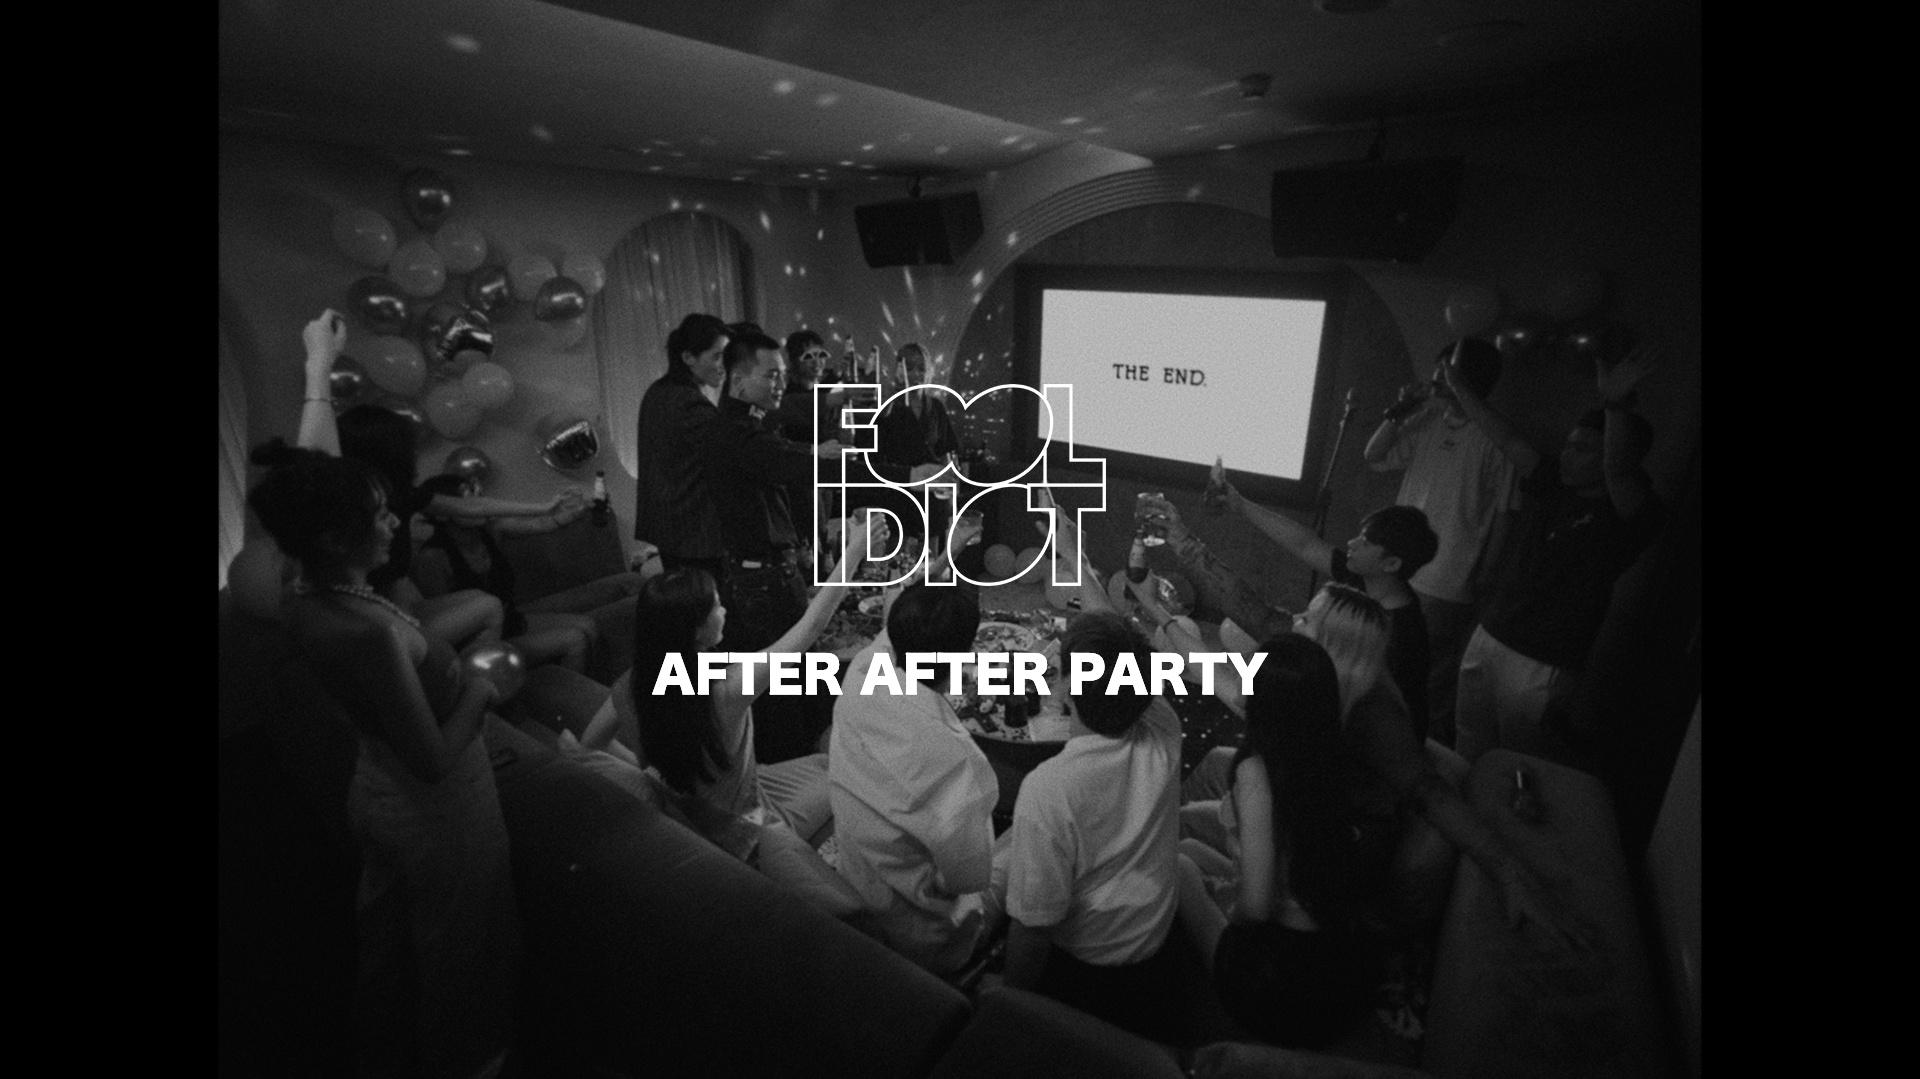 傻子与白痴 - 傻子与白痴 x 魏如萱「After After Party」Lyrics Video